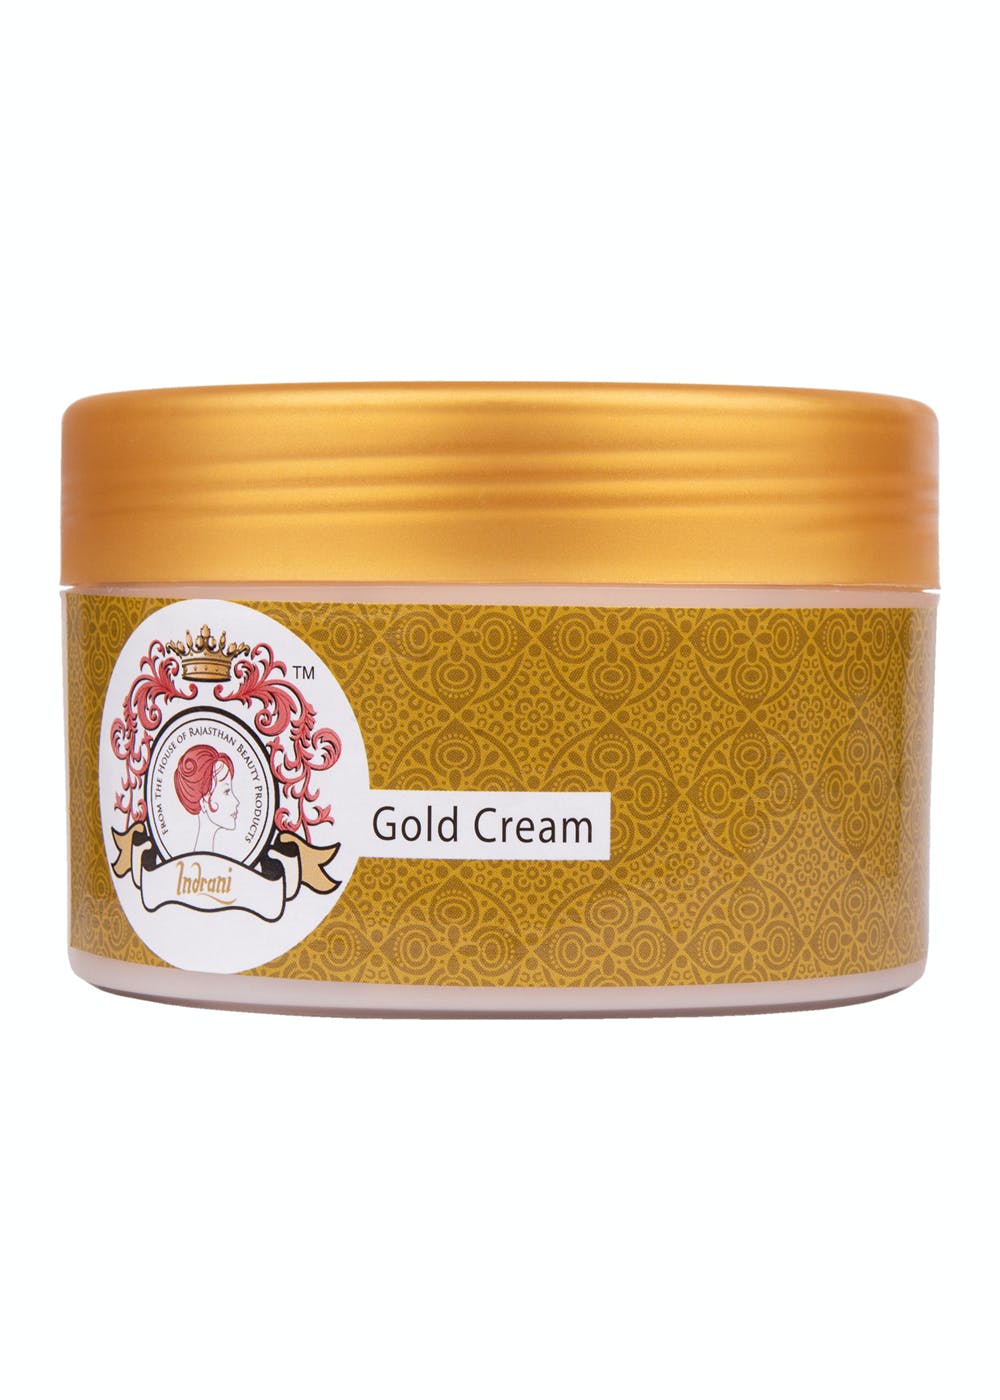 Gold Cream - 300gm